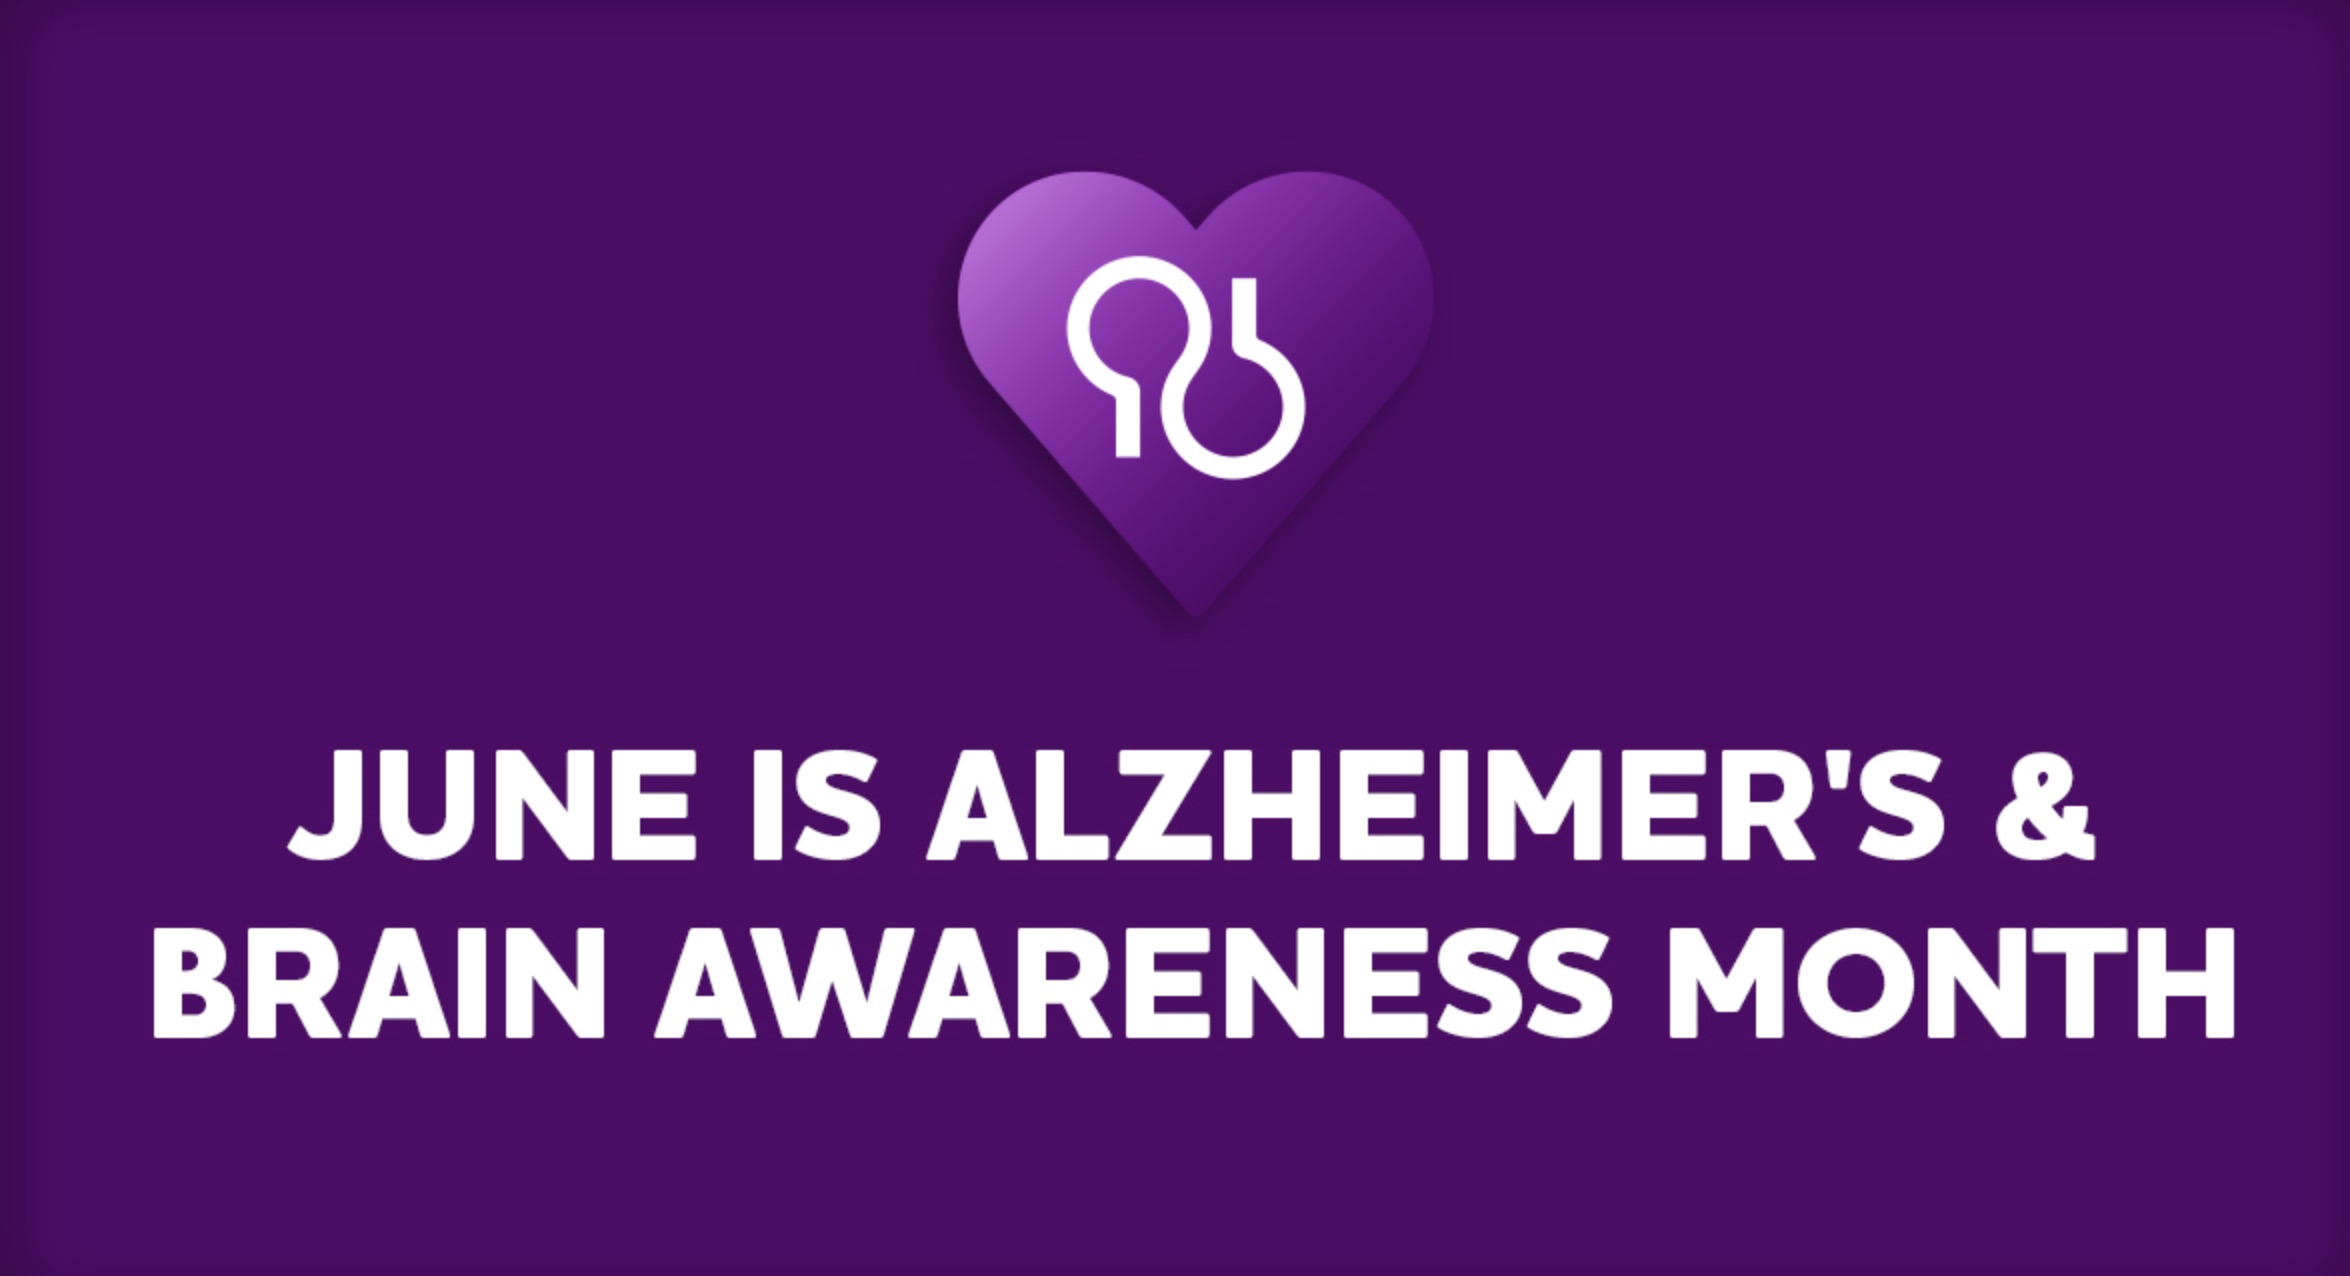 June is Alzheimer’s Awareness Month